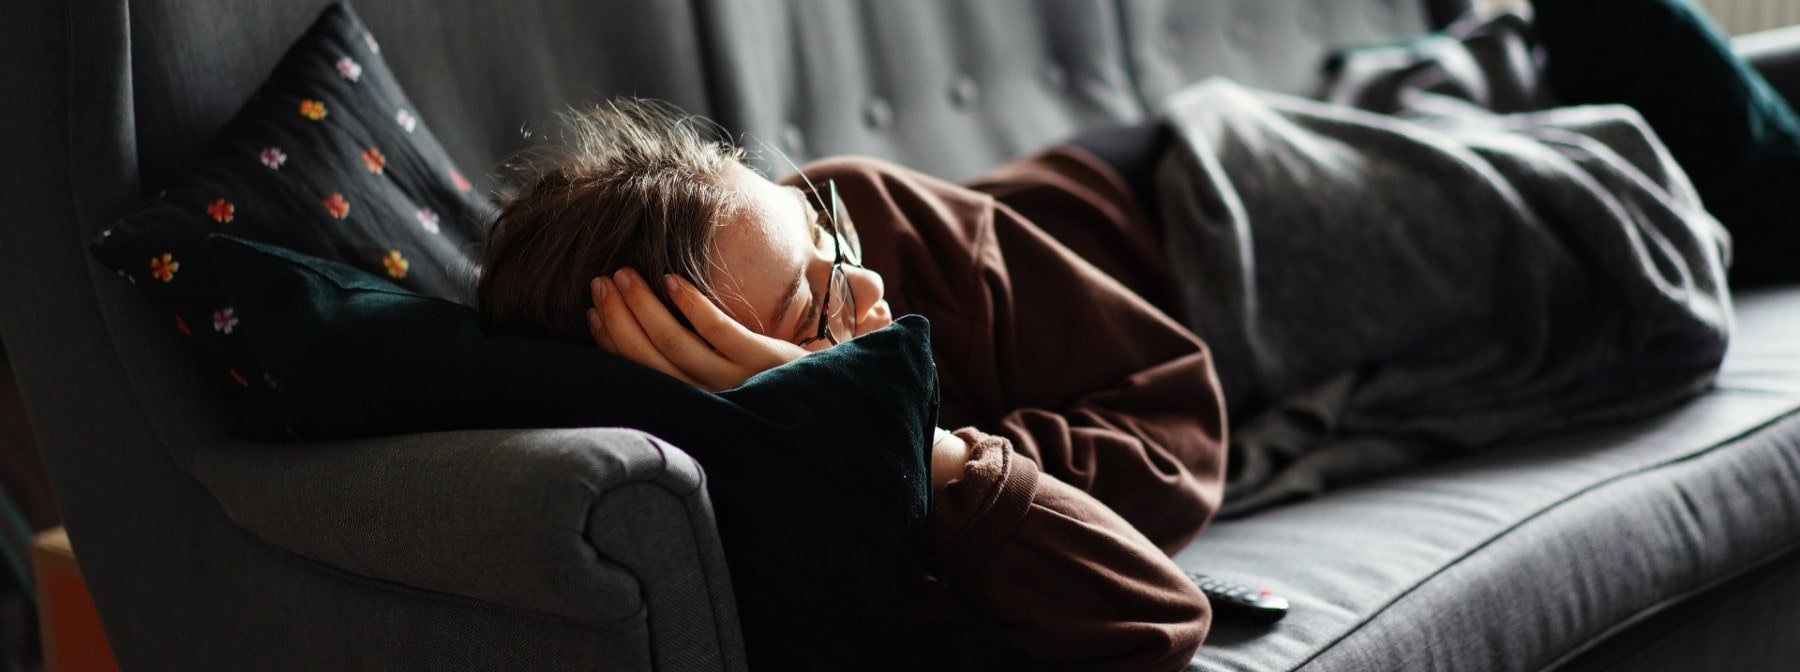 Ένας σύντομος ύπνος δεν αντισταθμίζει τη στέρηση ύπνου, σύμφωνα με μελέτη